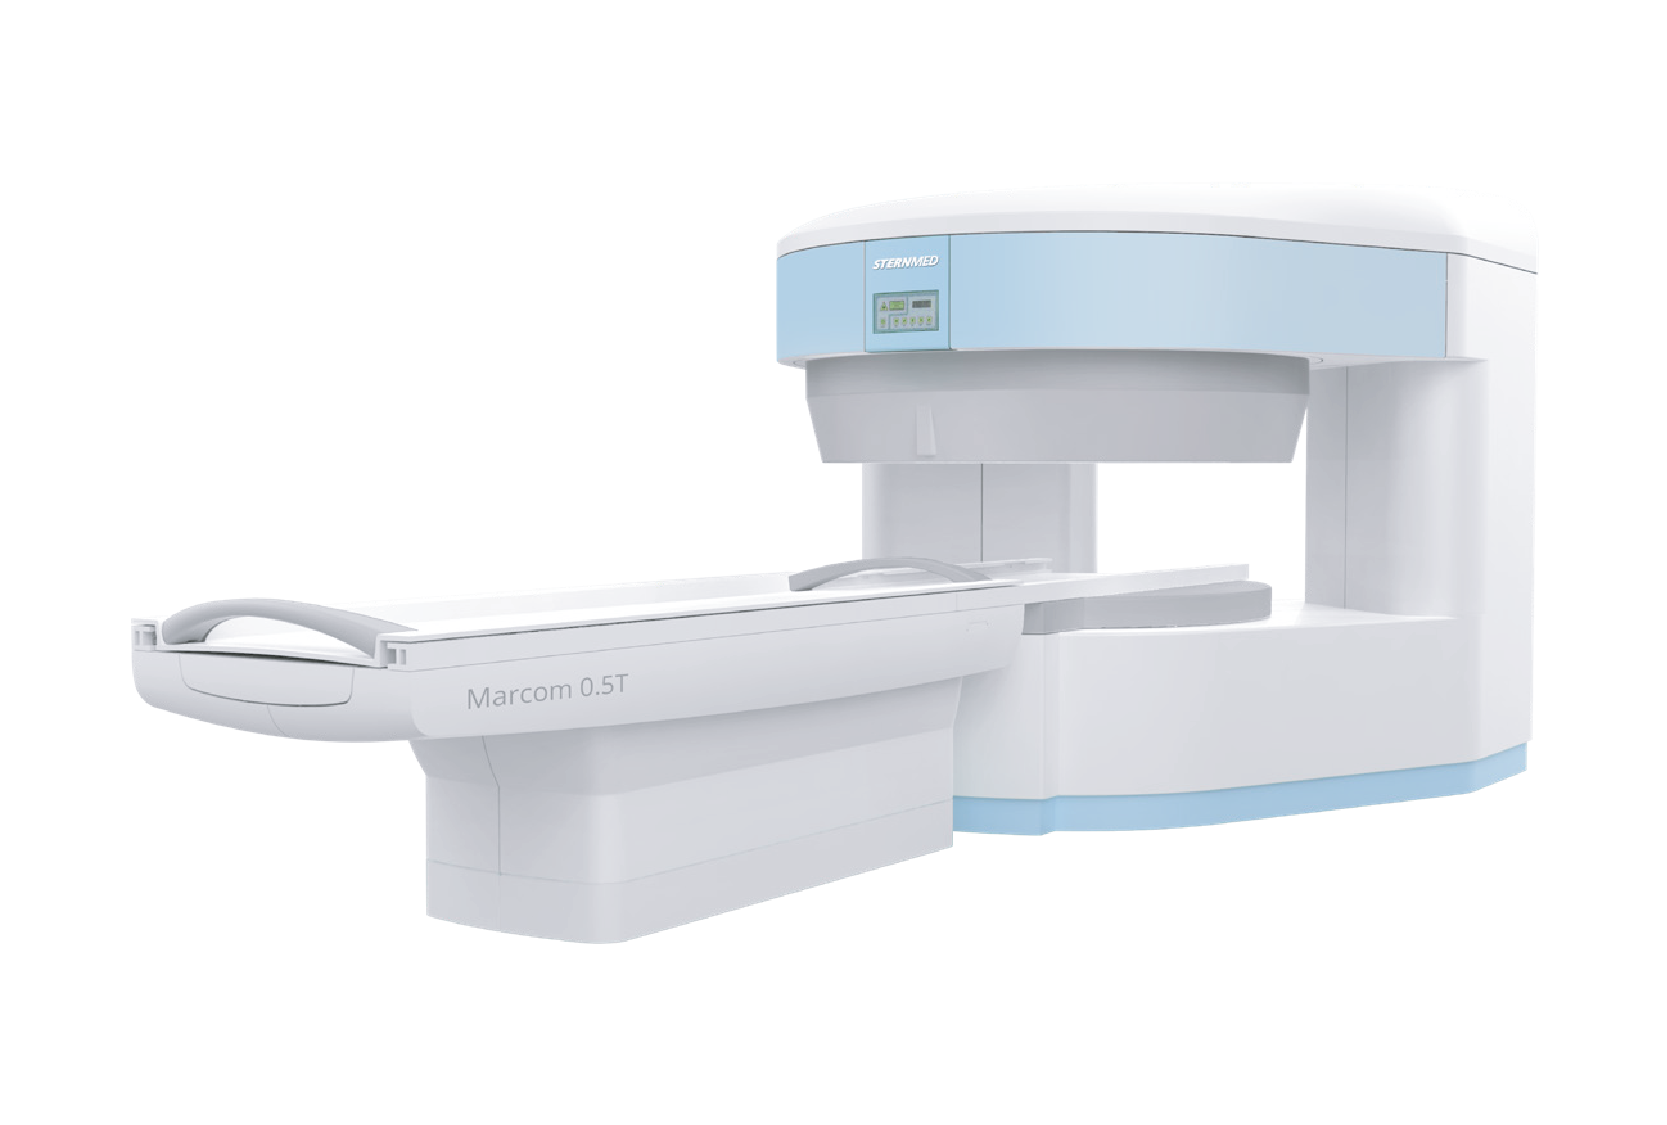 Marcom 0.5T MRI Machine